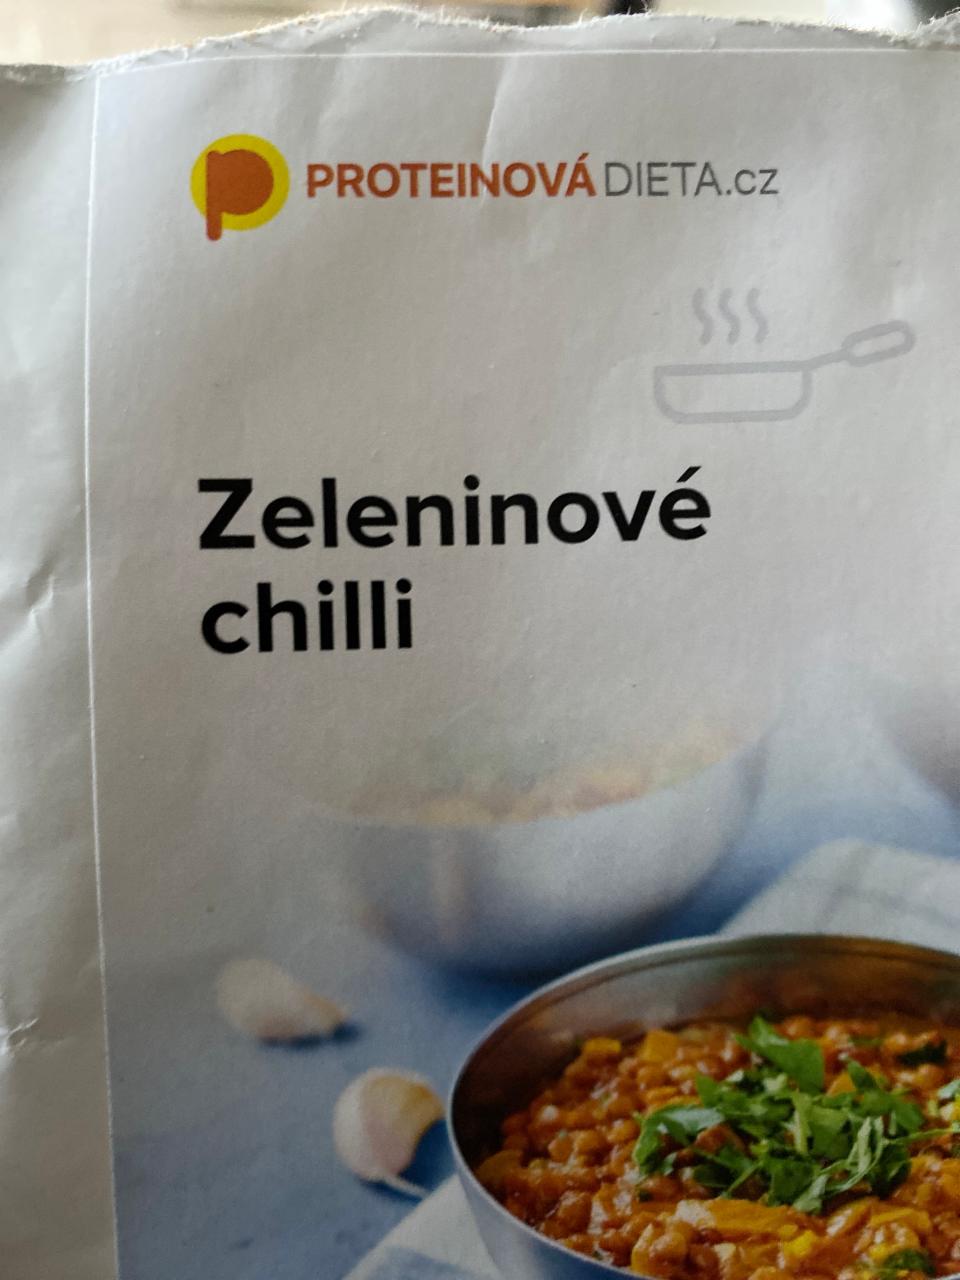 Fotografie - Zeleninové chilli ProteinováDieta.cz